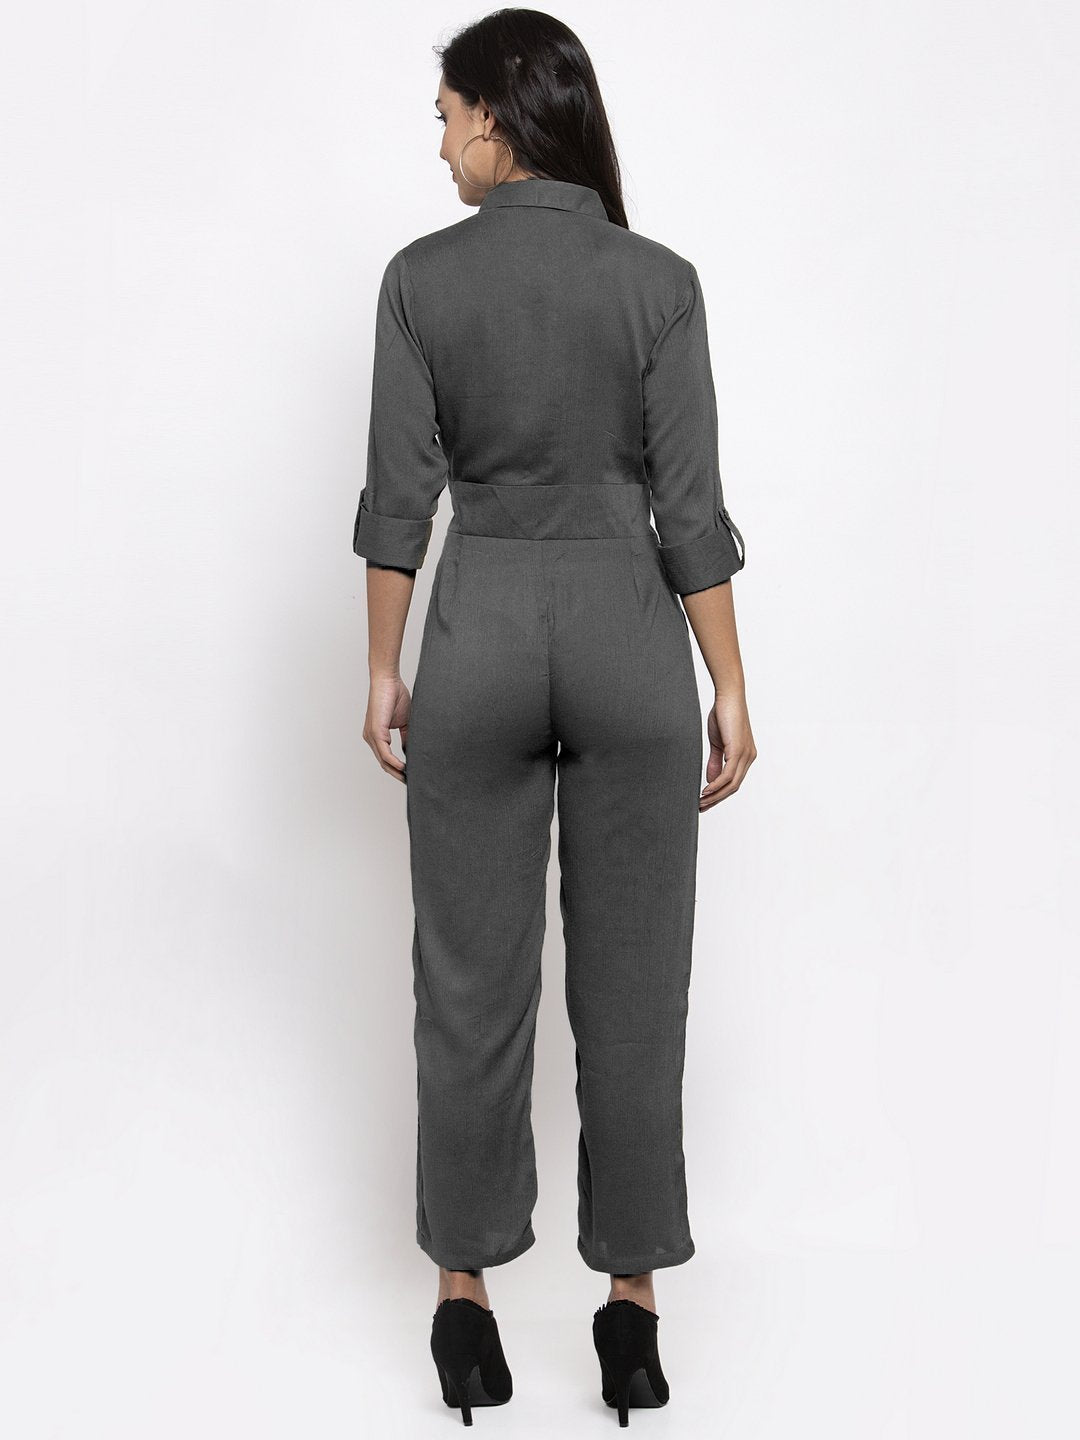 Women's Grey Solid Jumpsuit - Jompers